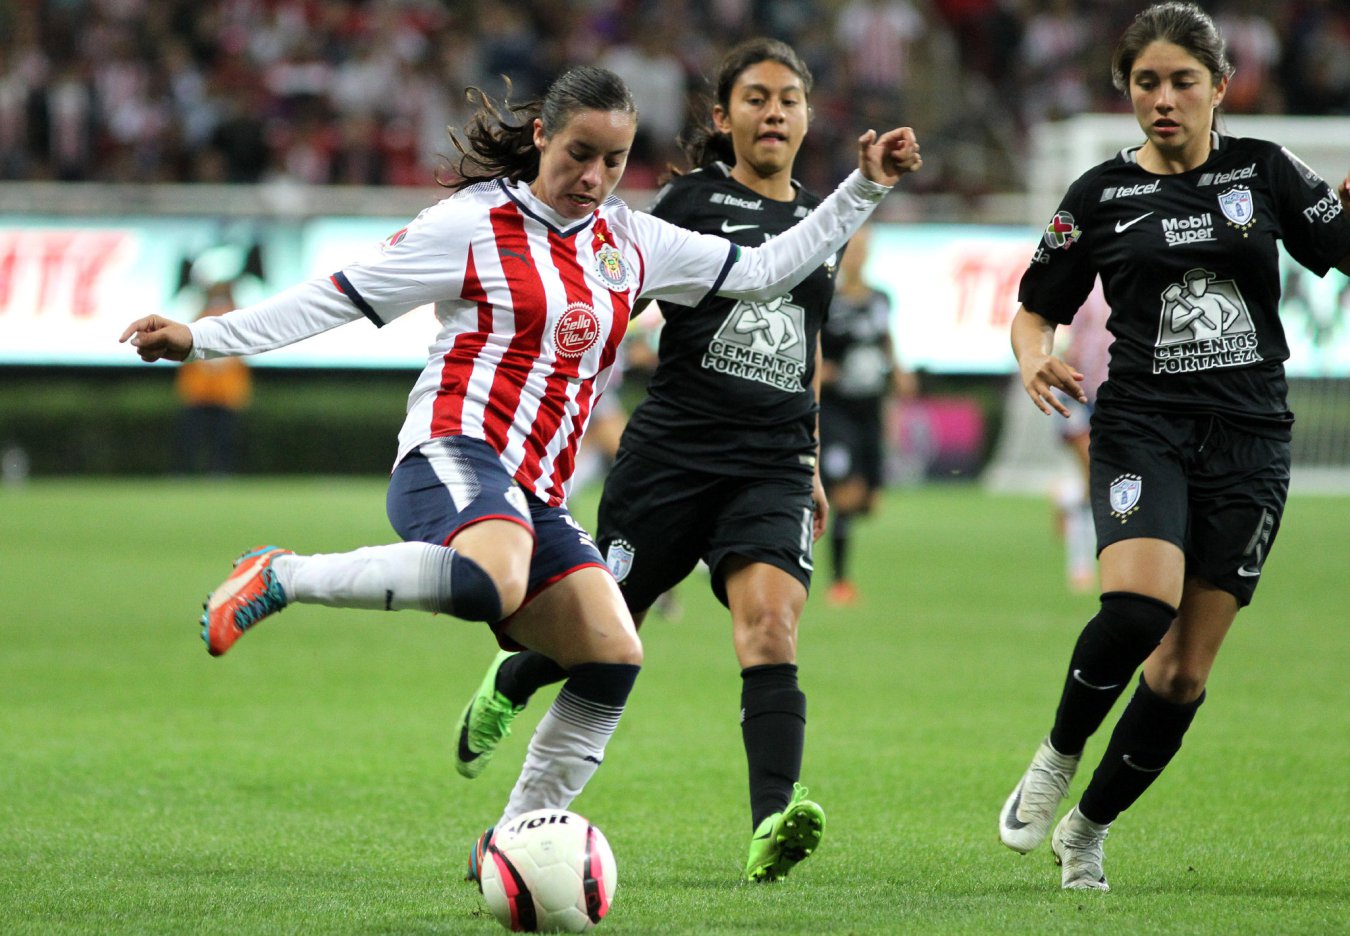 Chivas remonta a Pachuca en la final y son Campeonas de Liga MX Femenil